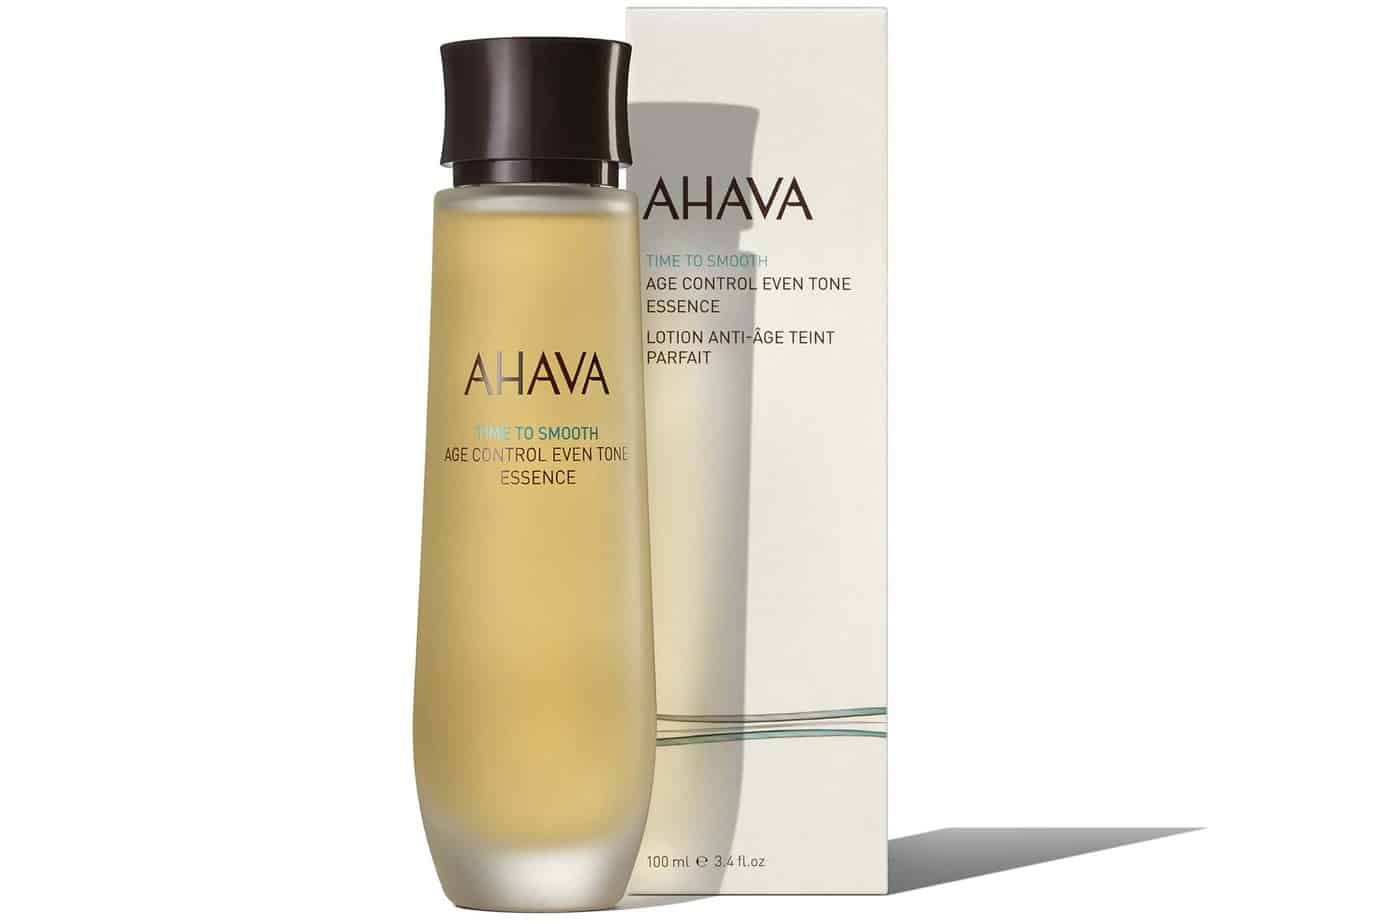 AHAVA פרה סרום אסנס אייג' קונטרול לגוון עור אחיד מחיר 199 שח צילום מוטי פישביין (2)